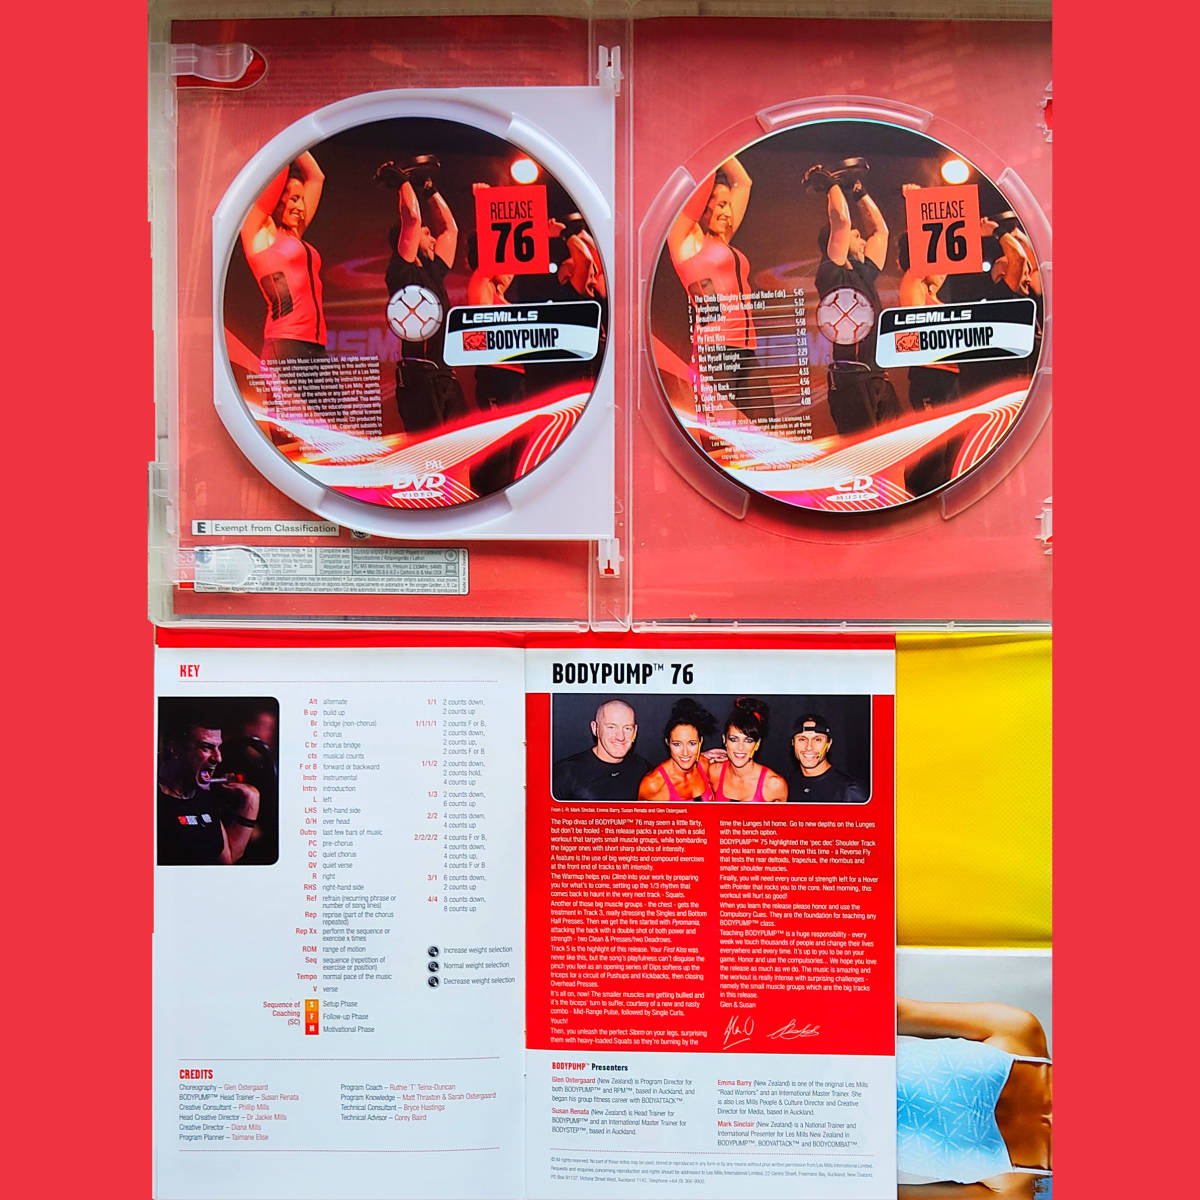 ボディパンプ 76 CD DVD LESMILLS BODYPUMP レスミルズ_画像2